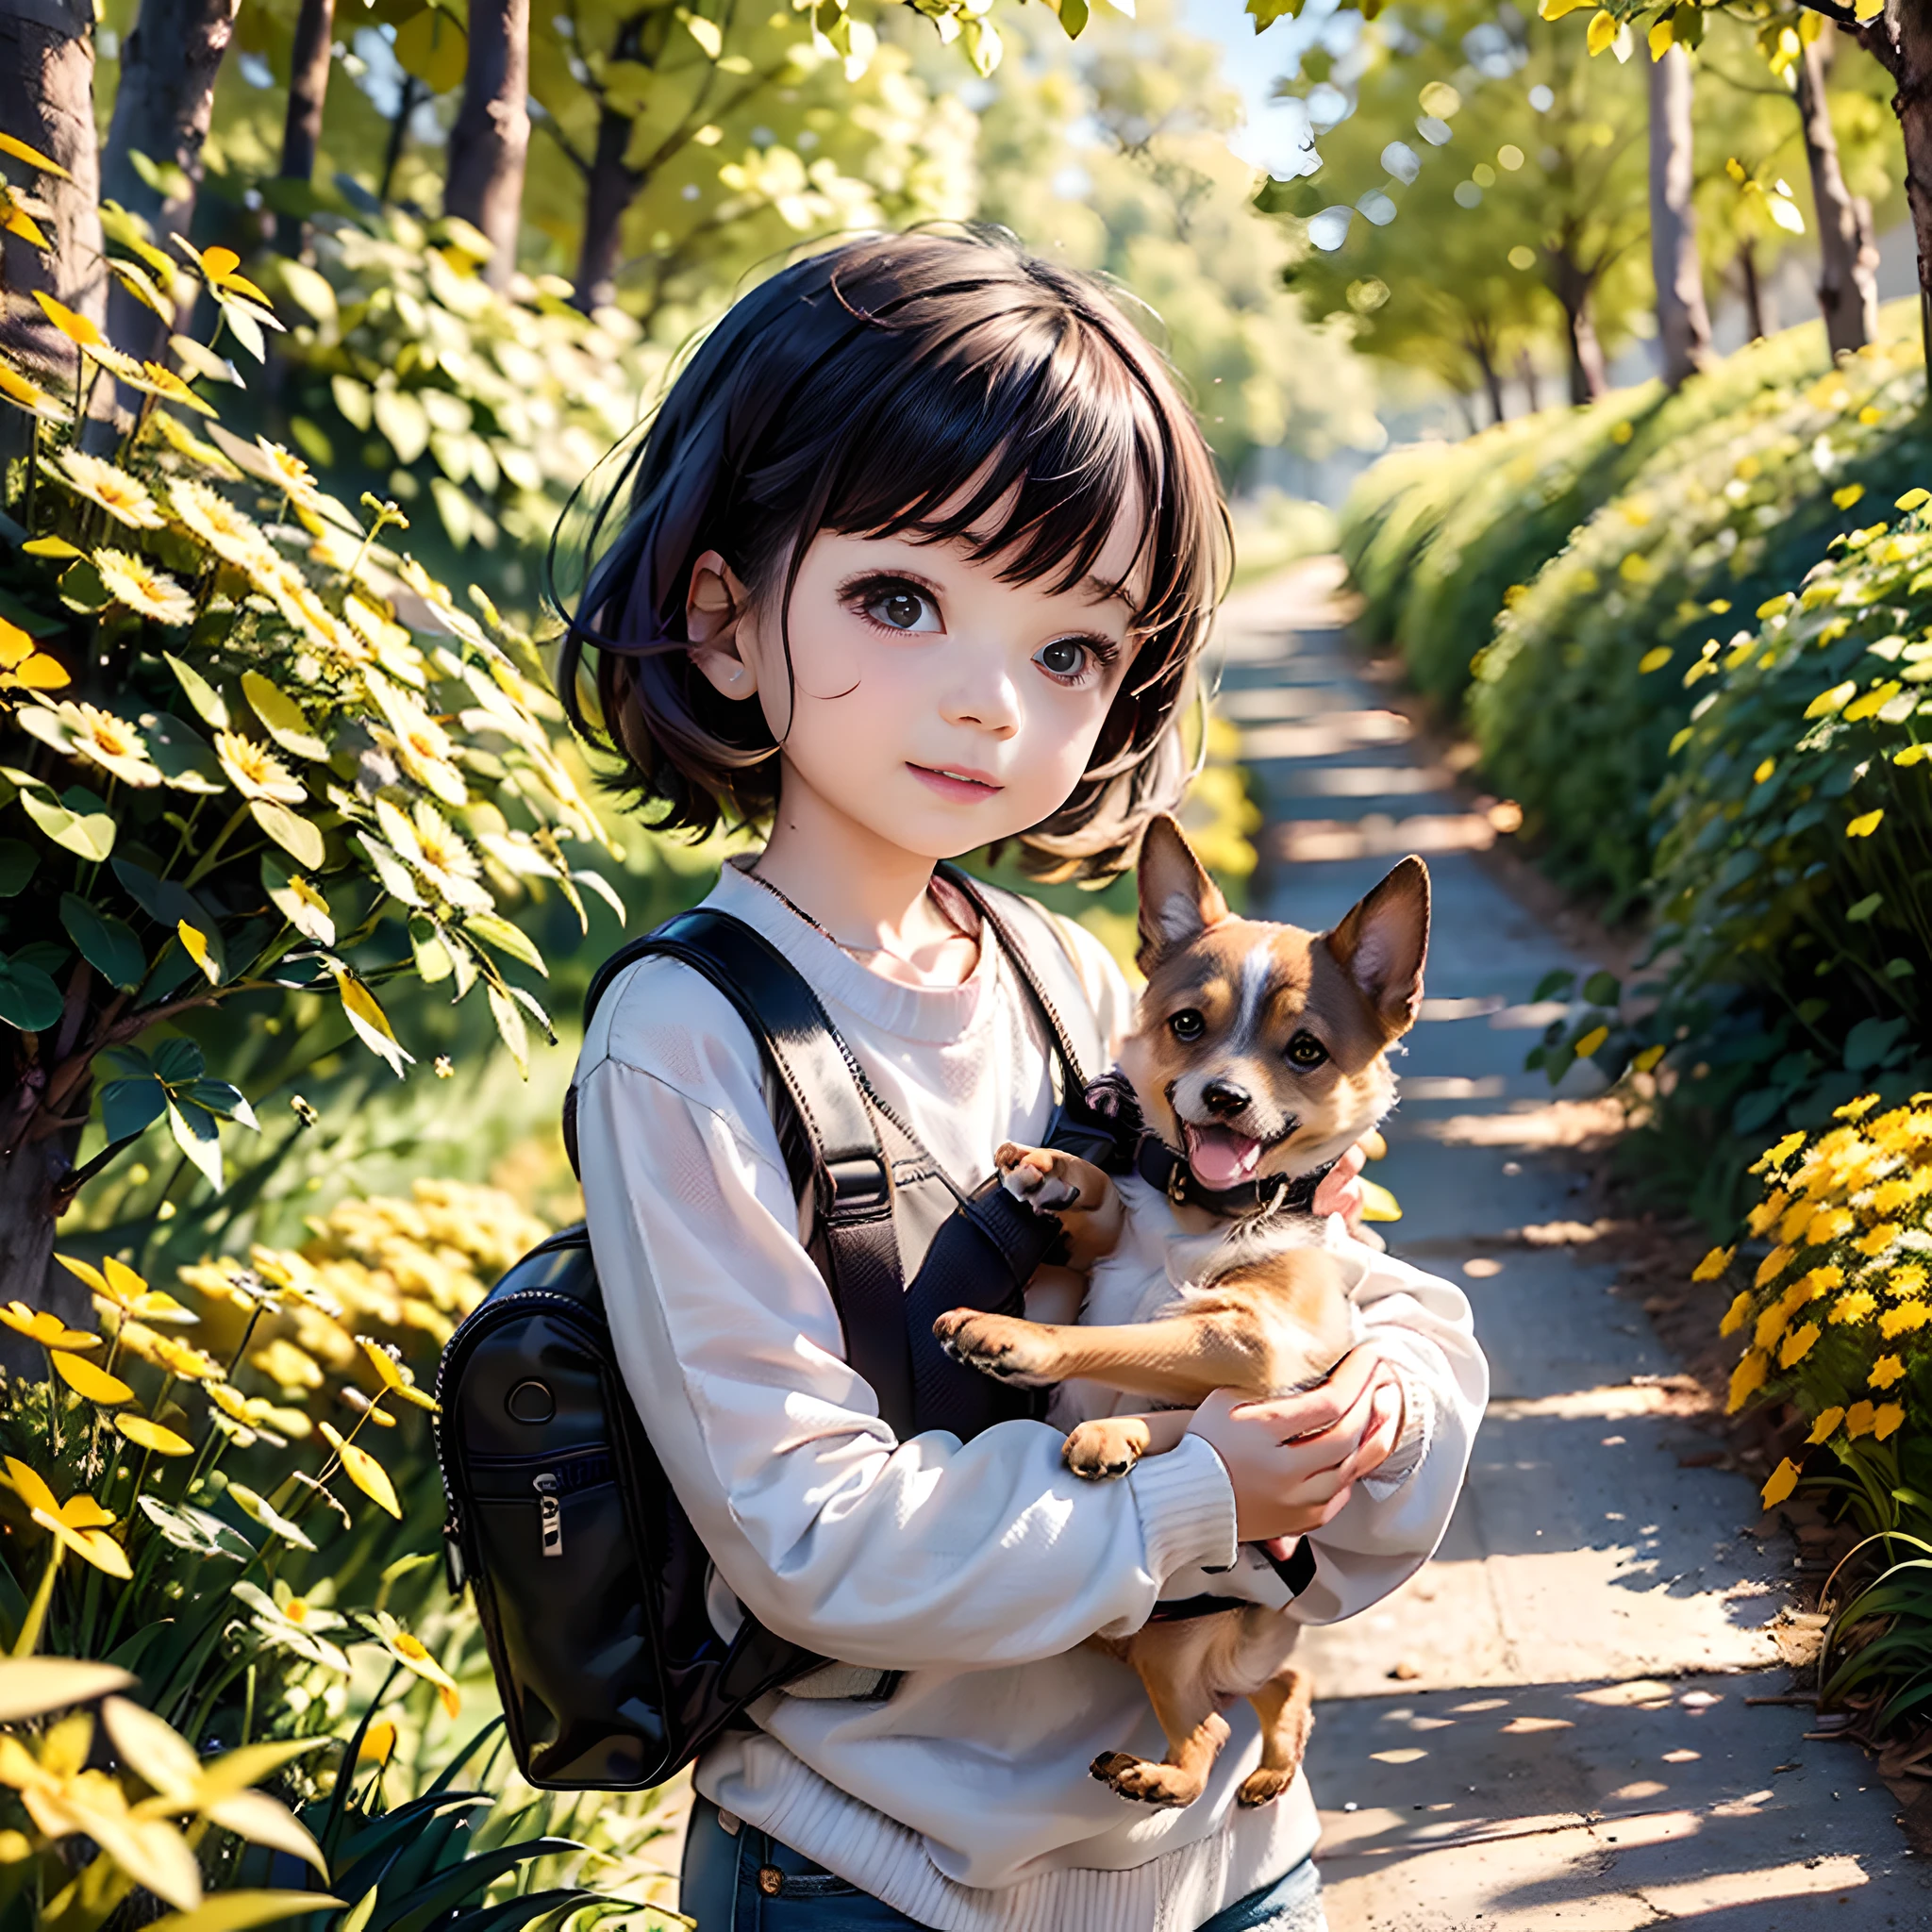 提示: 一个非常迷人的人，背着背包，和她可爱的小狗一起享受着美丽的春日郊游，周围环绕着美丽的黄花和大自然. 该插画为4K高清插画，面部特征细节丰富，具有卡通风格的视觉效果.